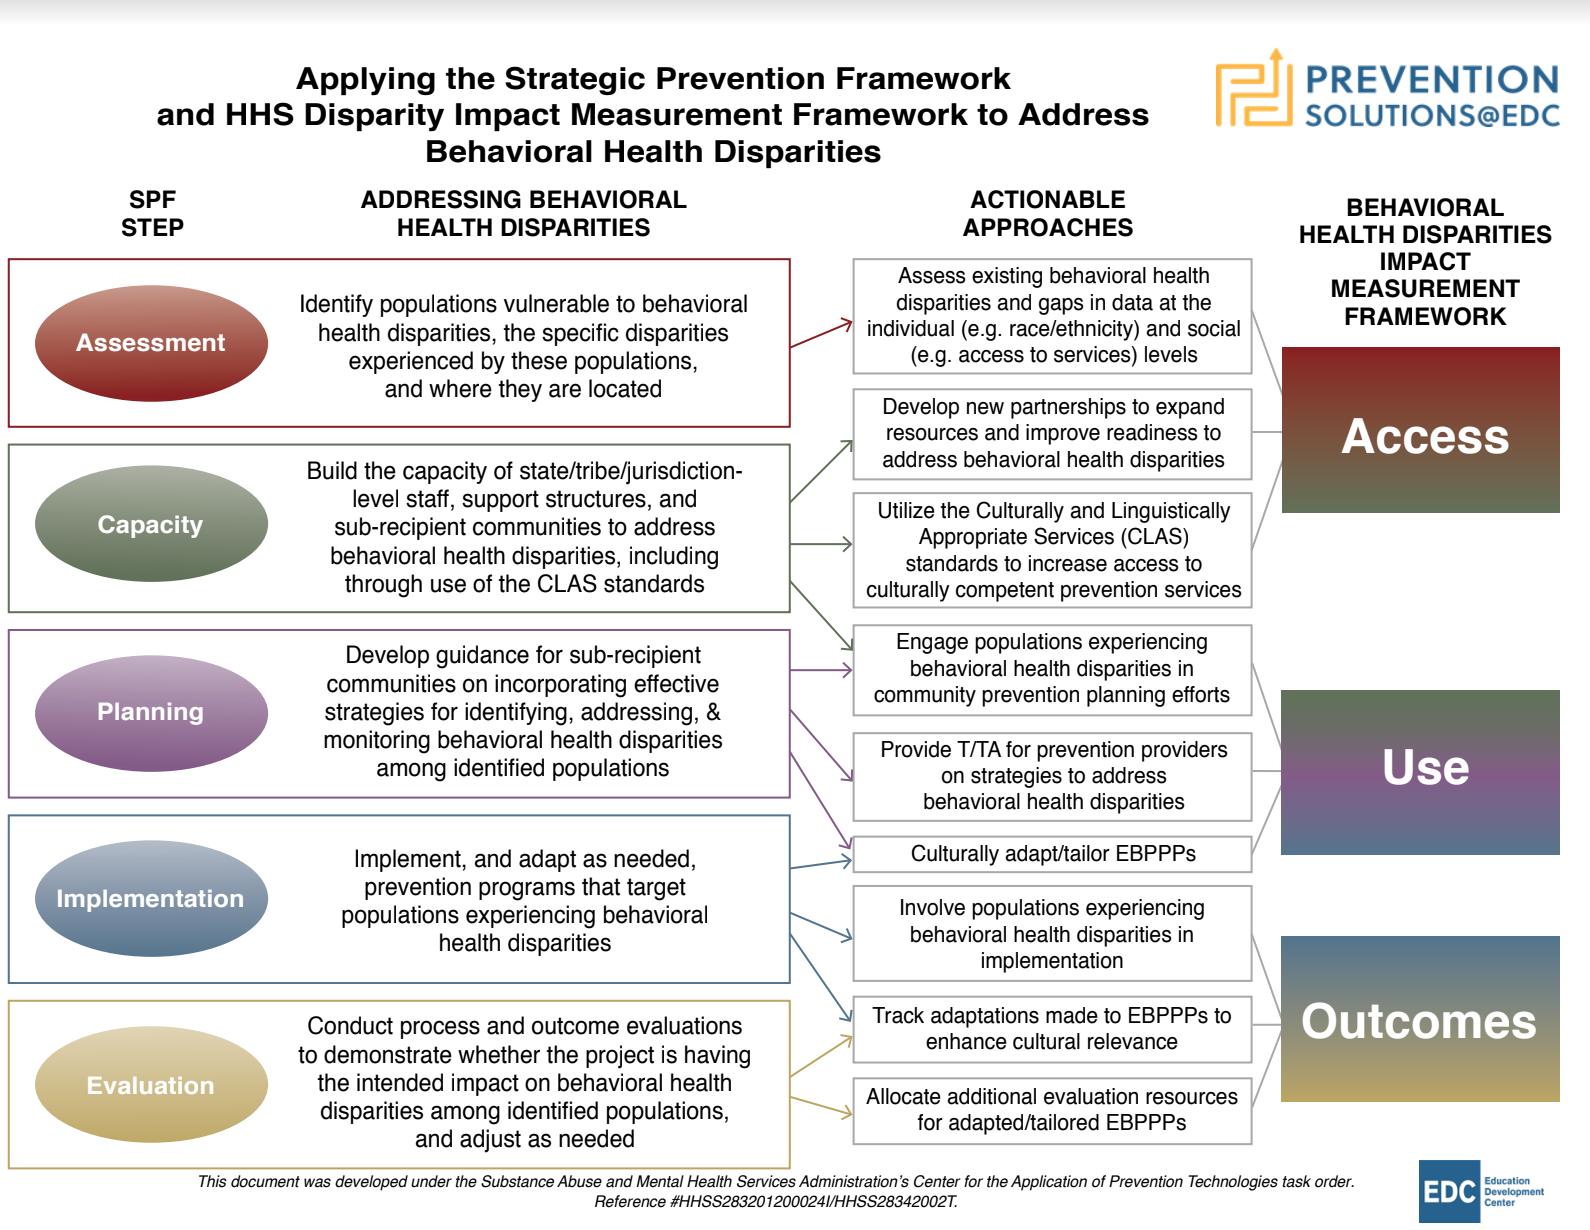 Applying the Strategic Prevention Framework model